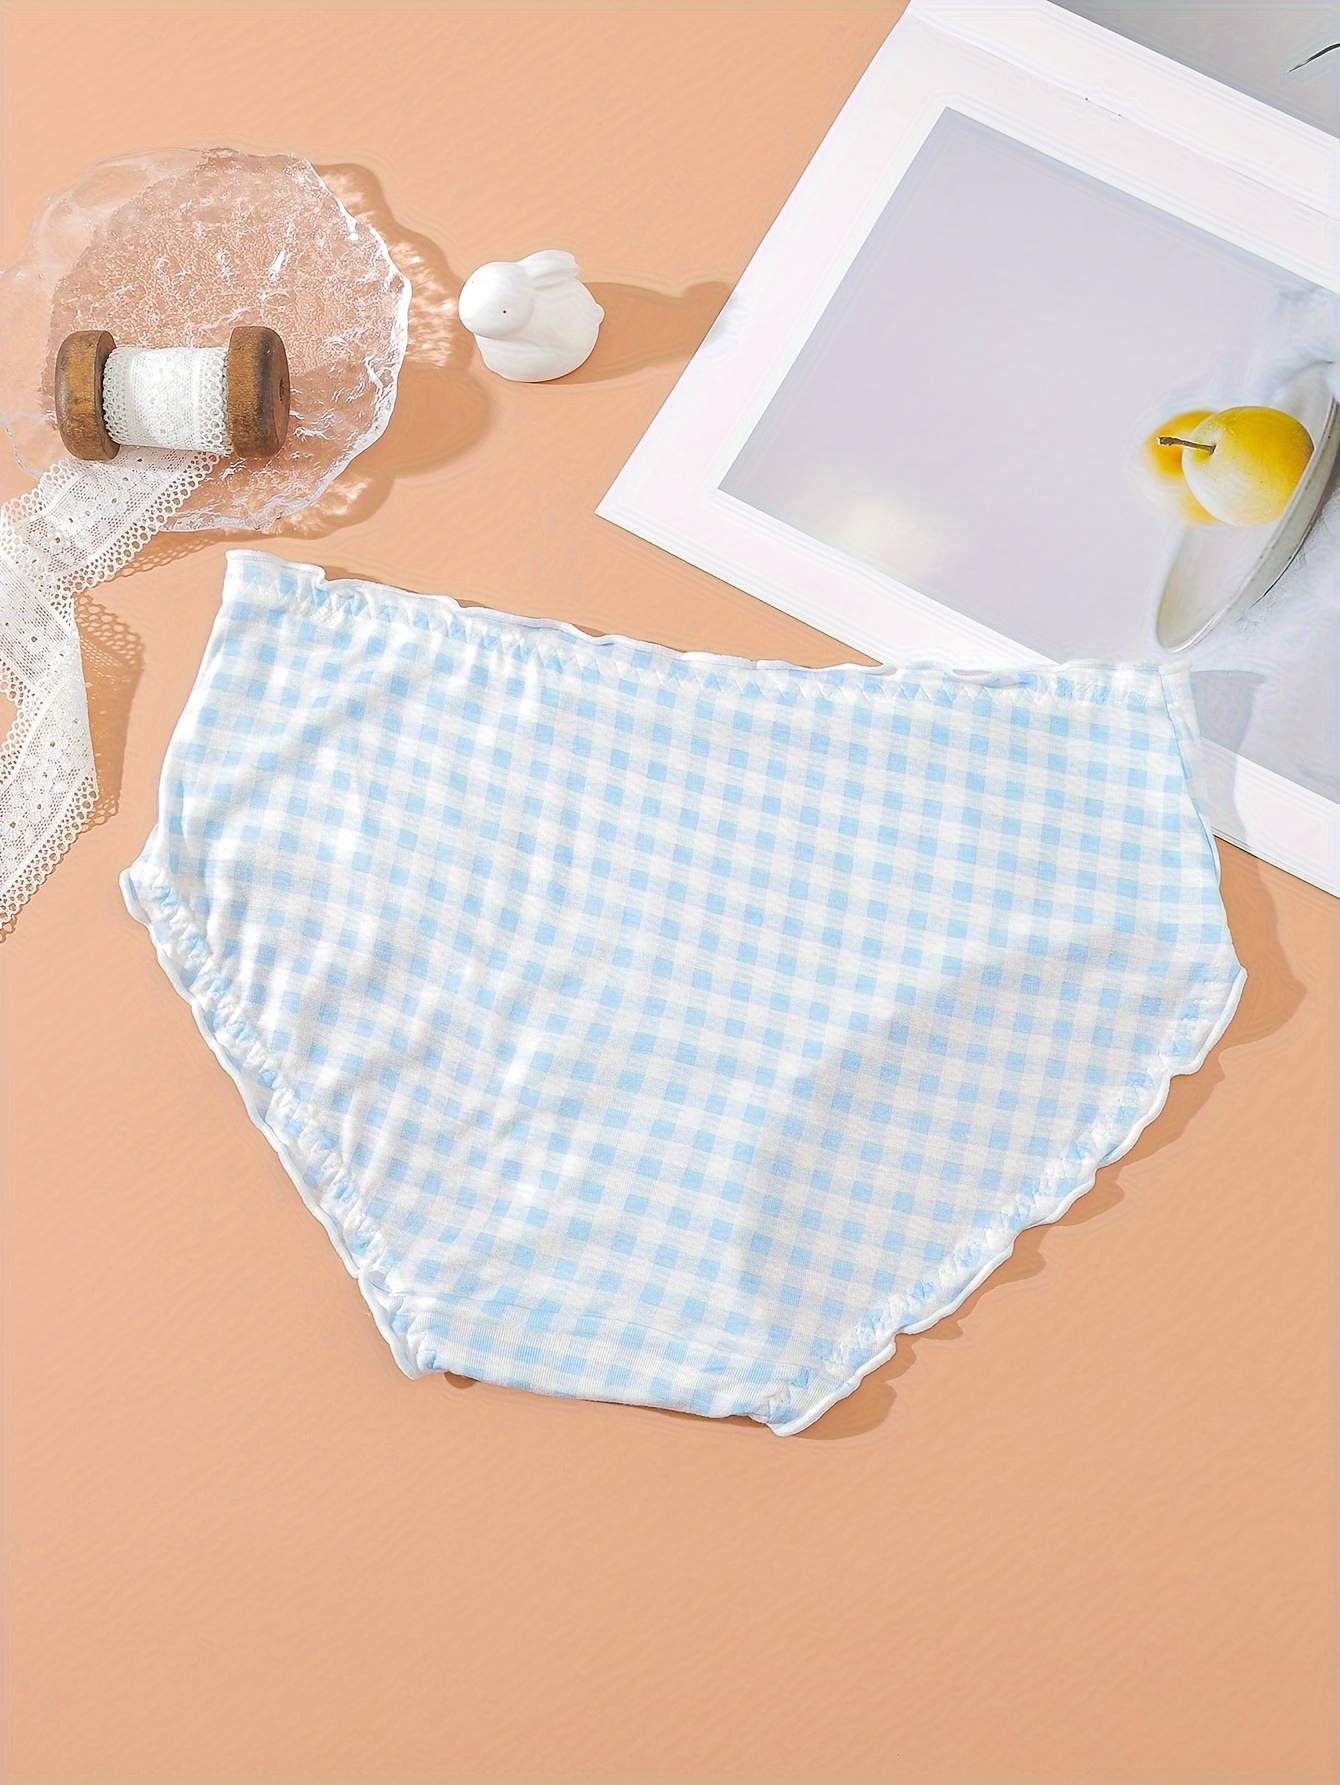 Cheap LANGSHA 5Pcs Cotton Panties Women Underwear Breathable Cute